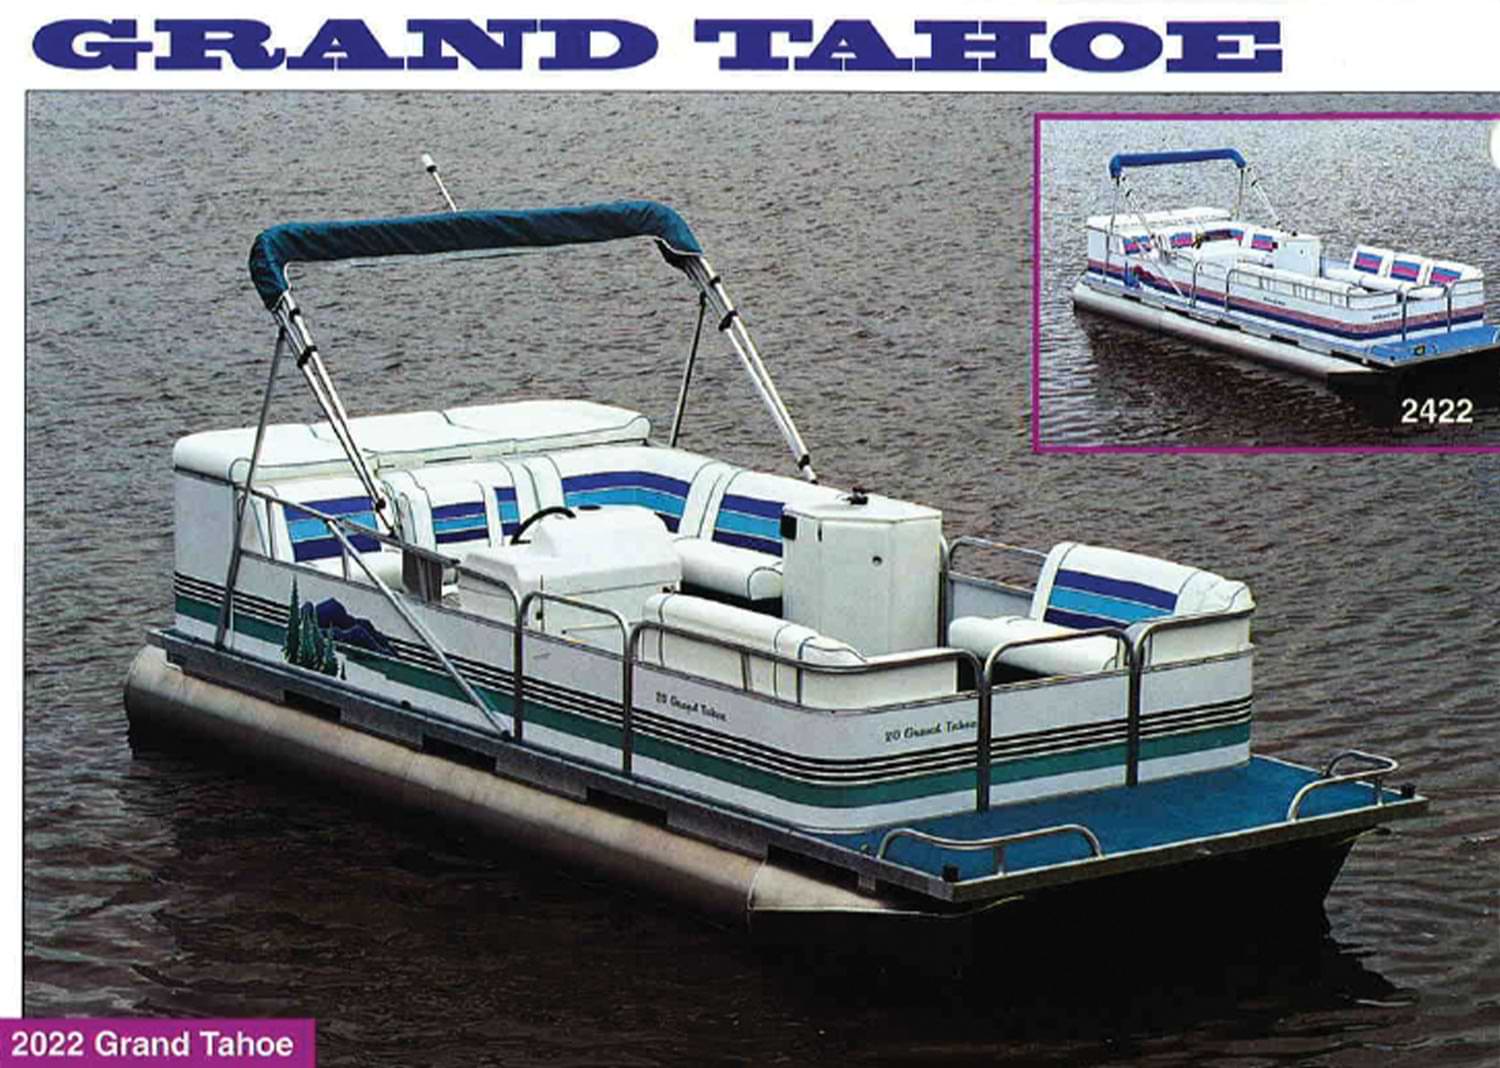 a 2022 Grand Tahoe pontoon listing